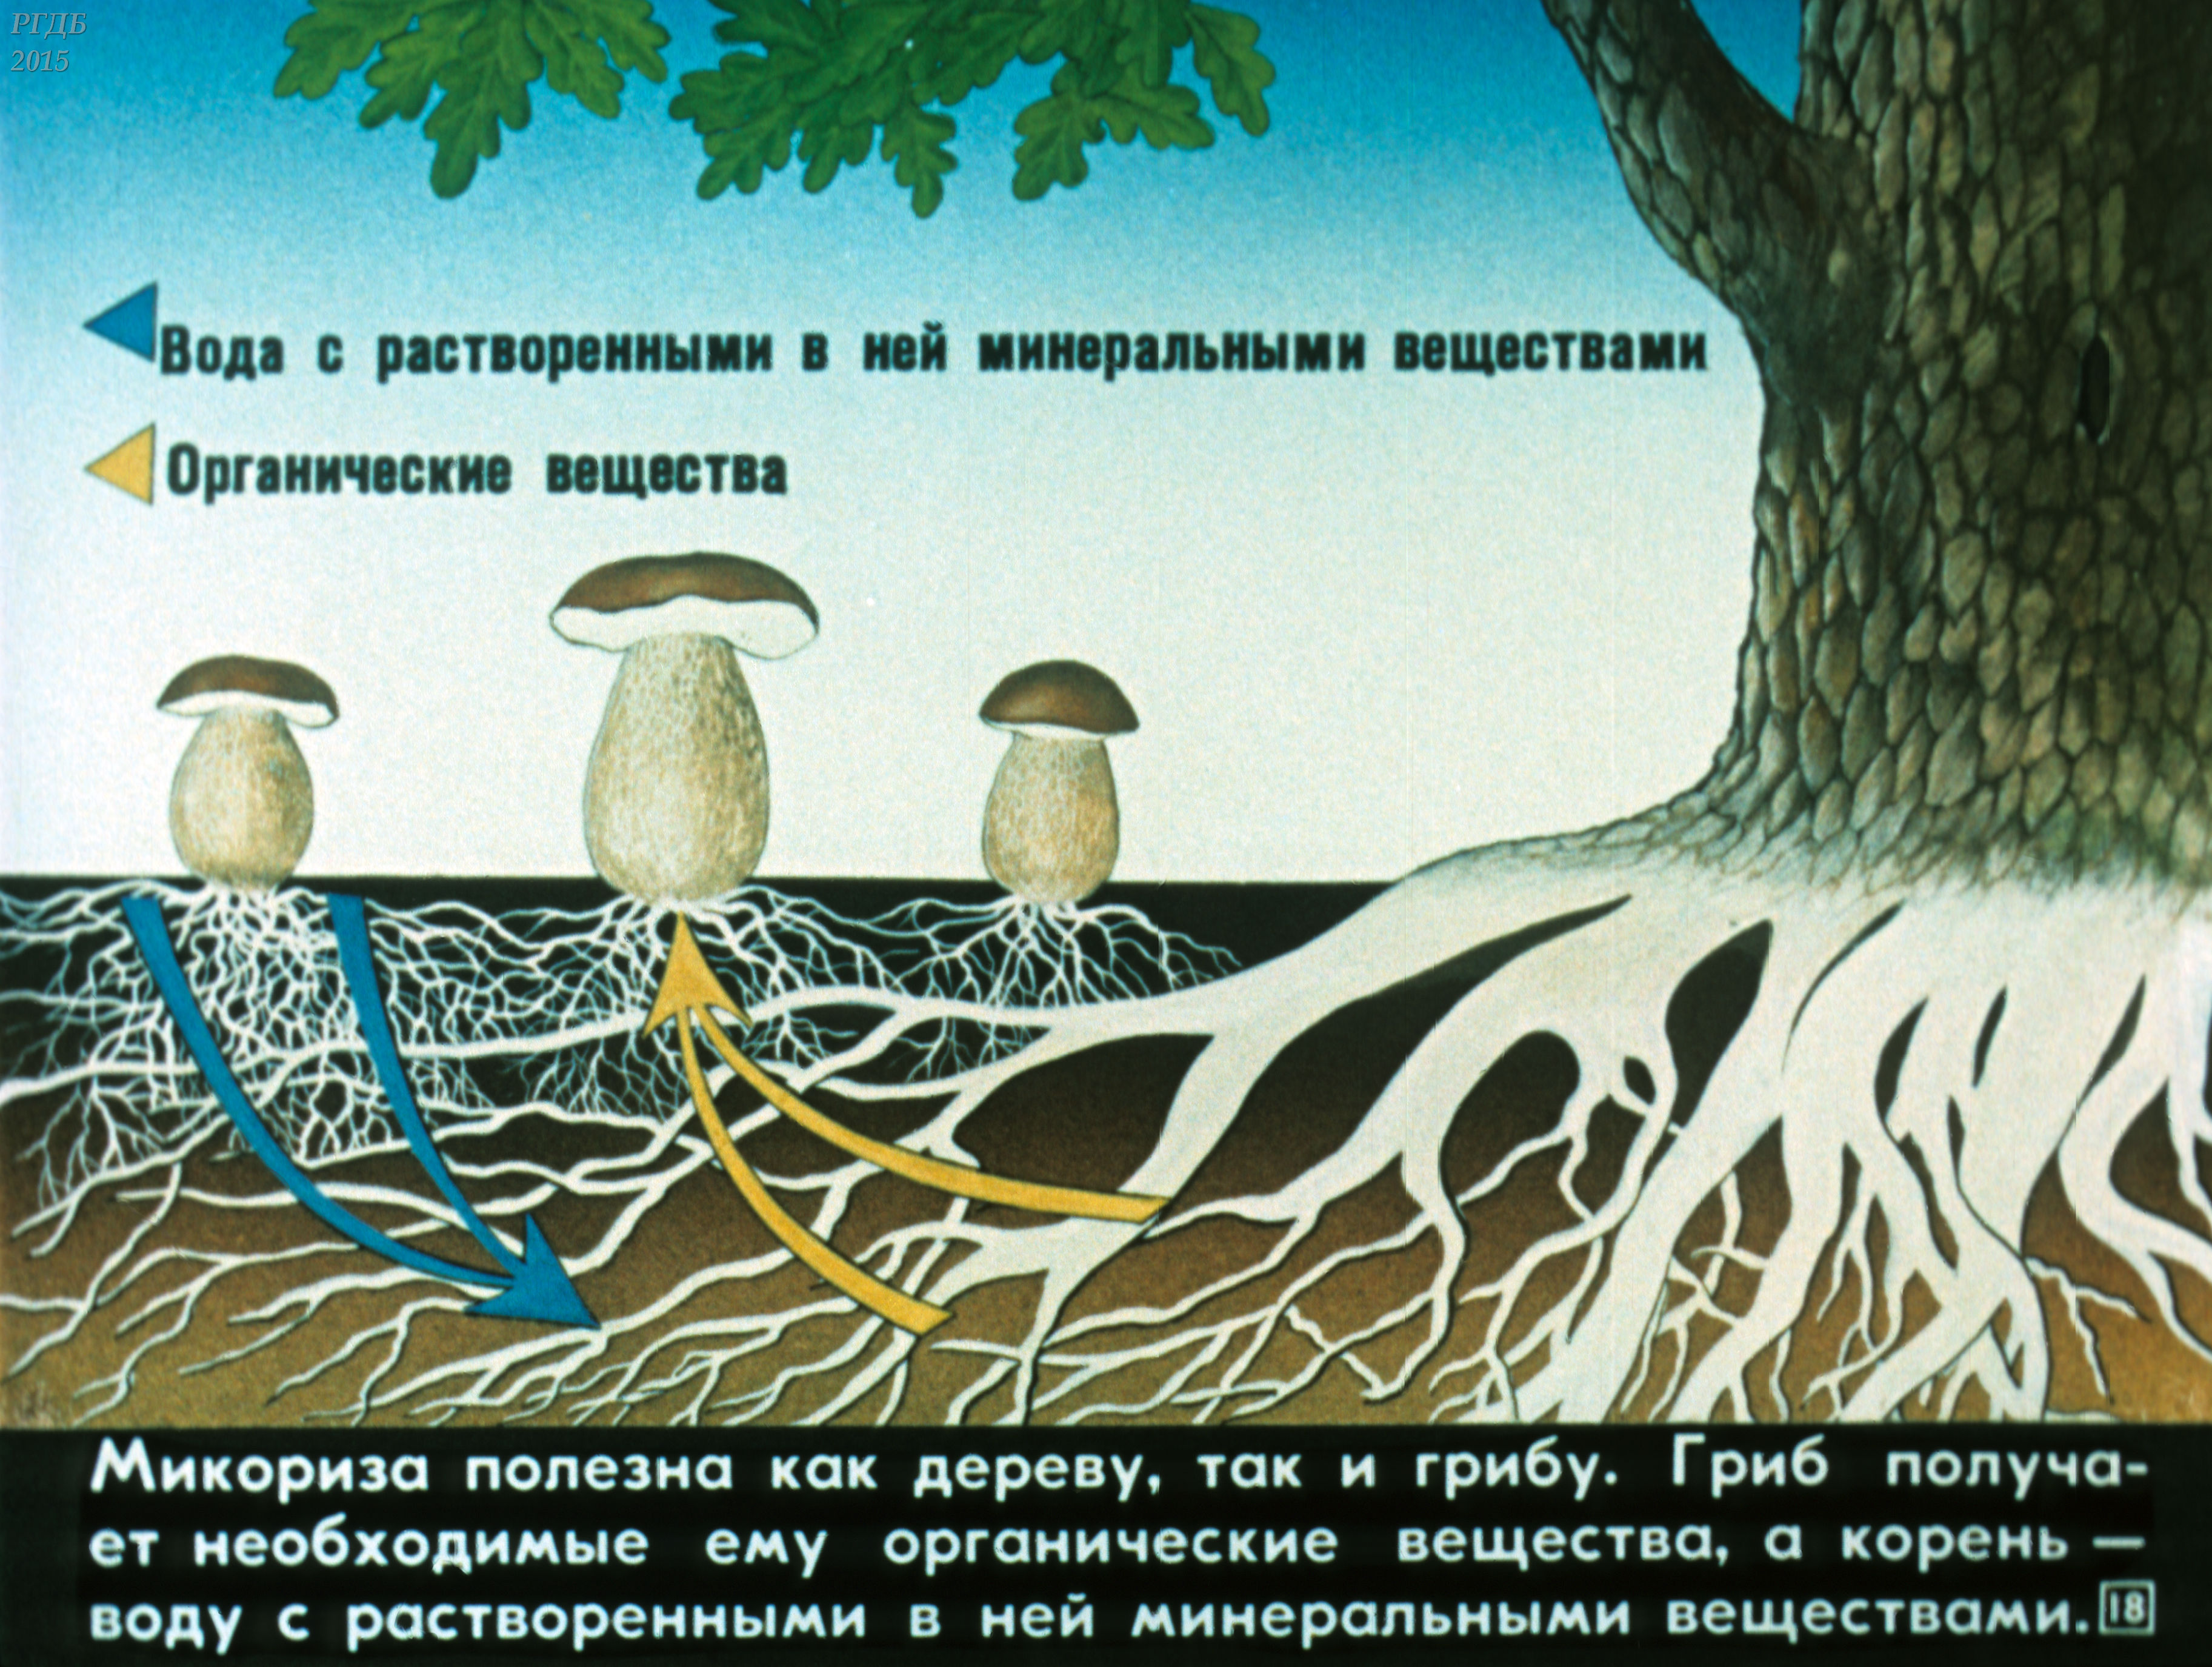 Корни грибов как называется. Схема симбиоза гриба и дерева. Микориза с грибами-симбионтами. Симбиоз гриба и дерева. Взаимосвязь грибов и деревьев.